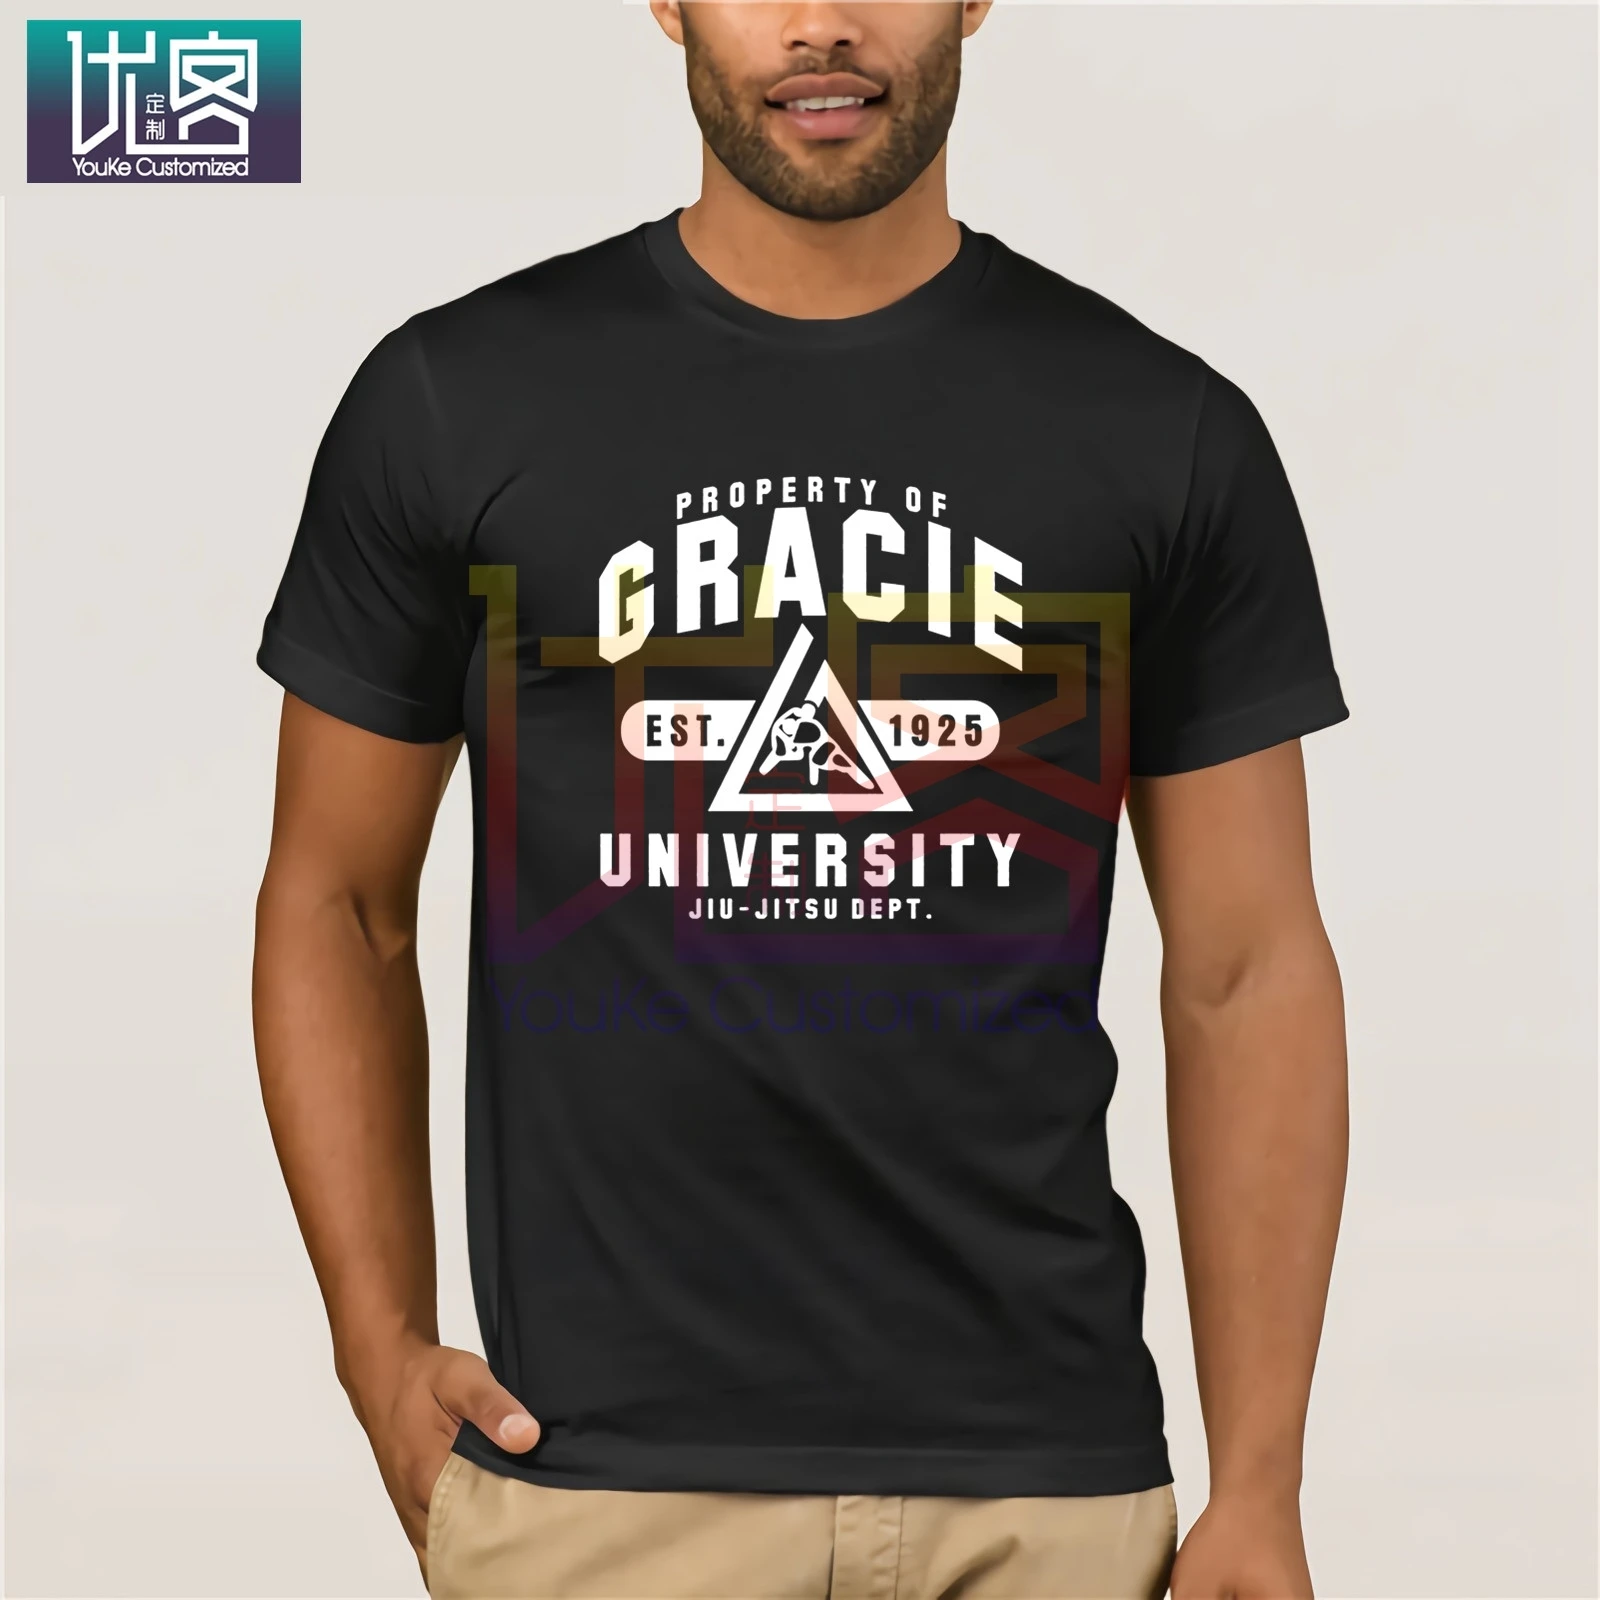 Фото Новая футболка из Бразильского университета джиу джитсу Грейси одежда для